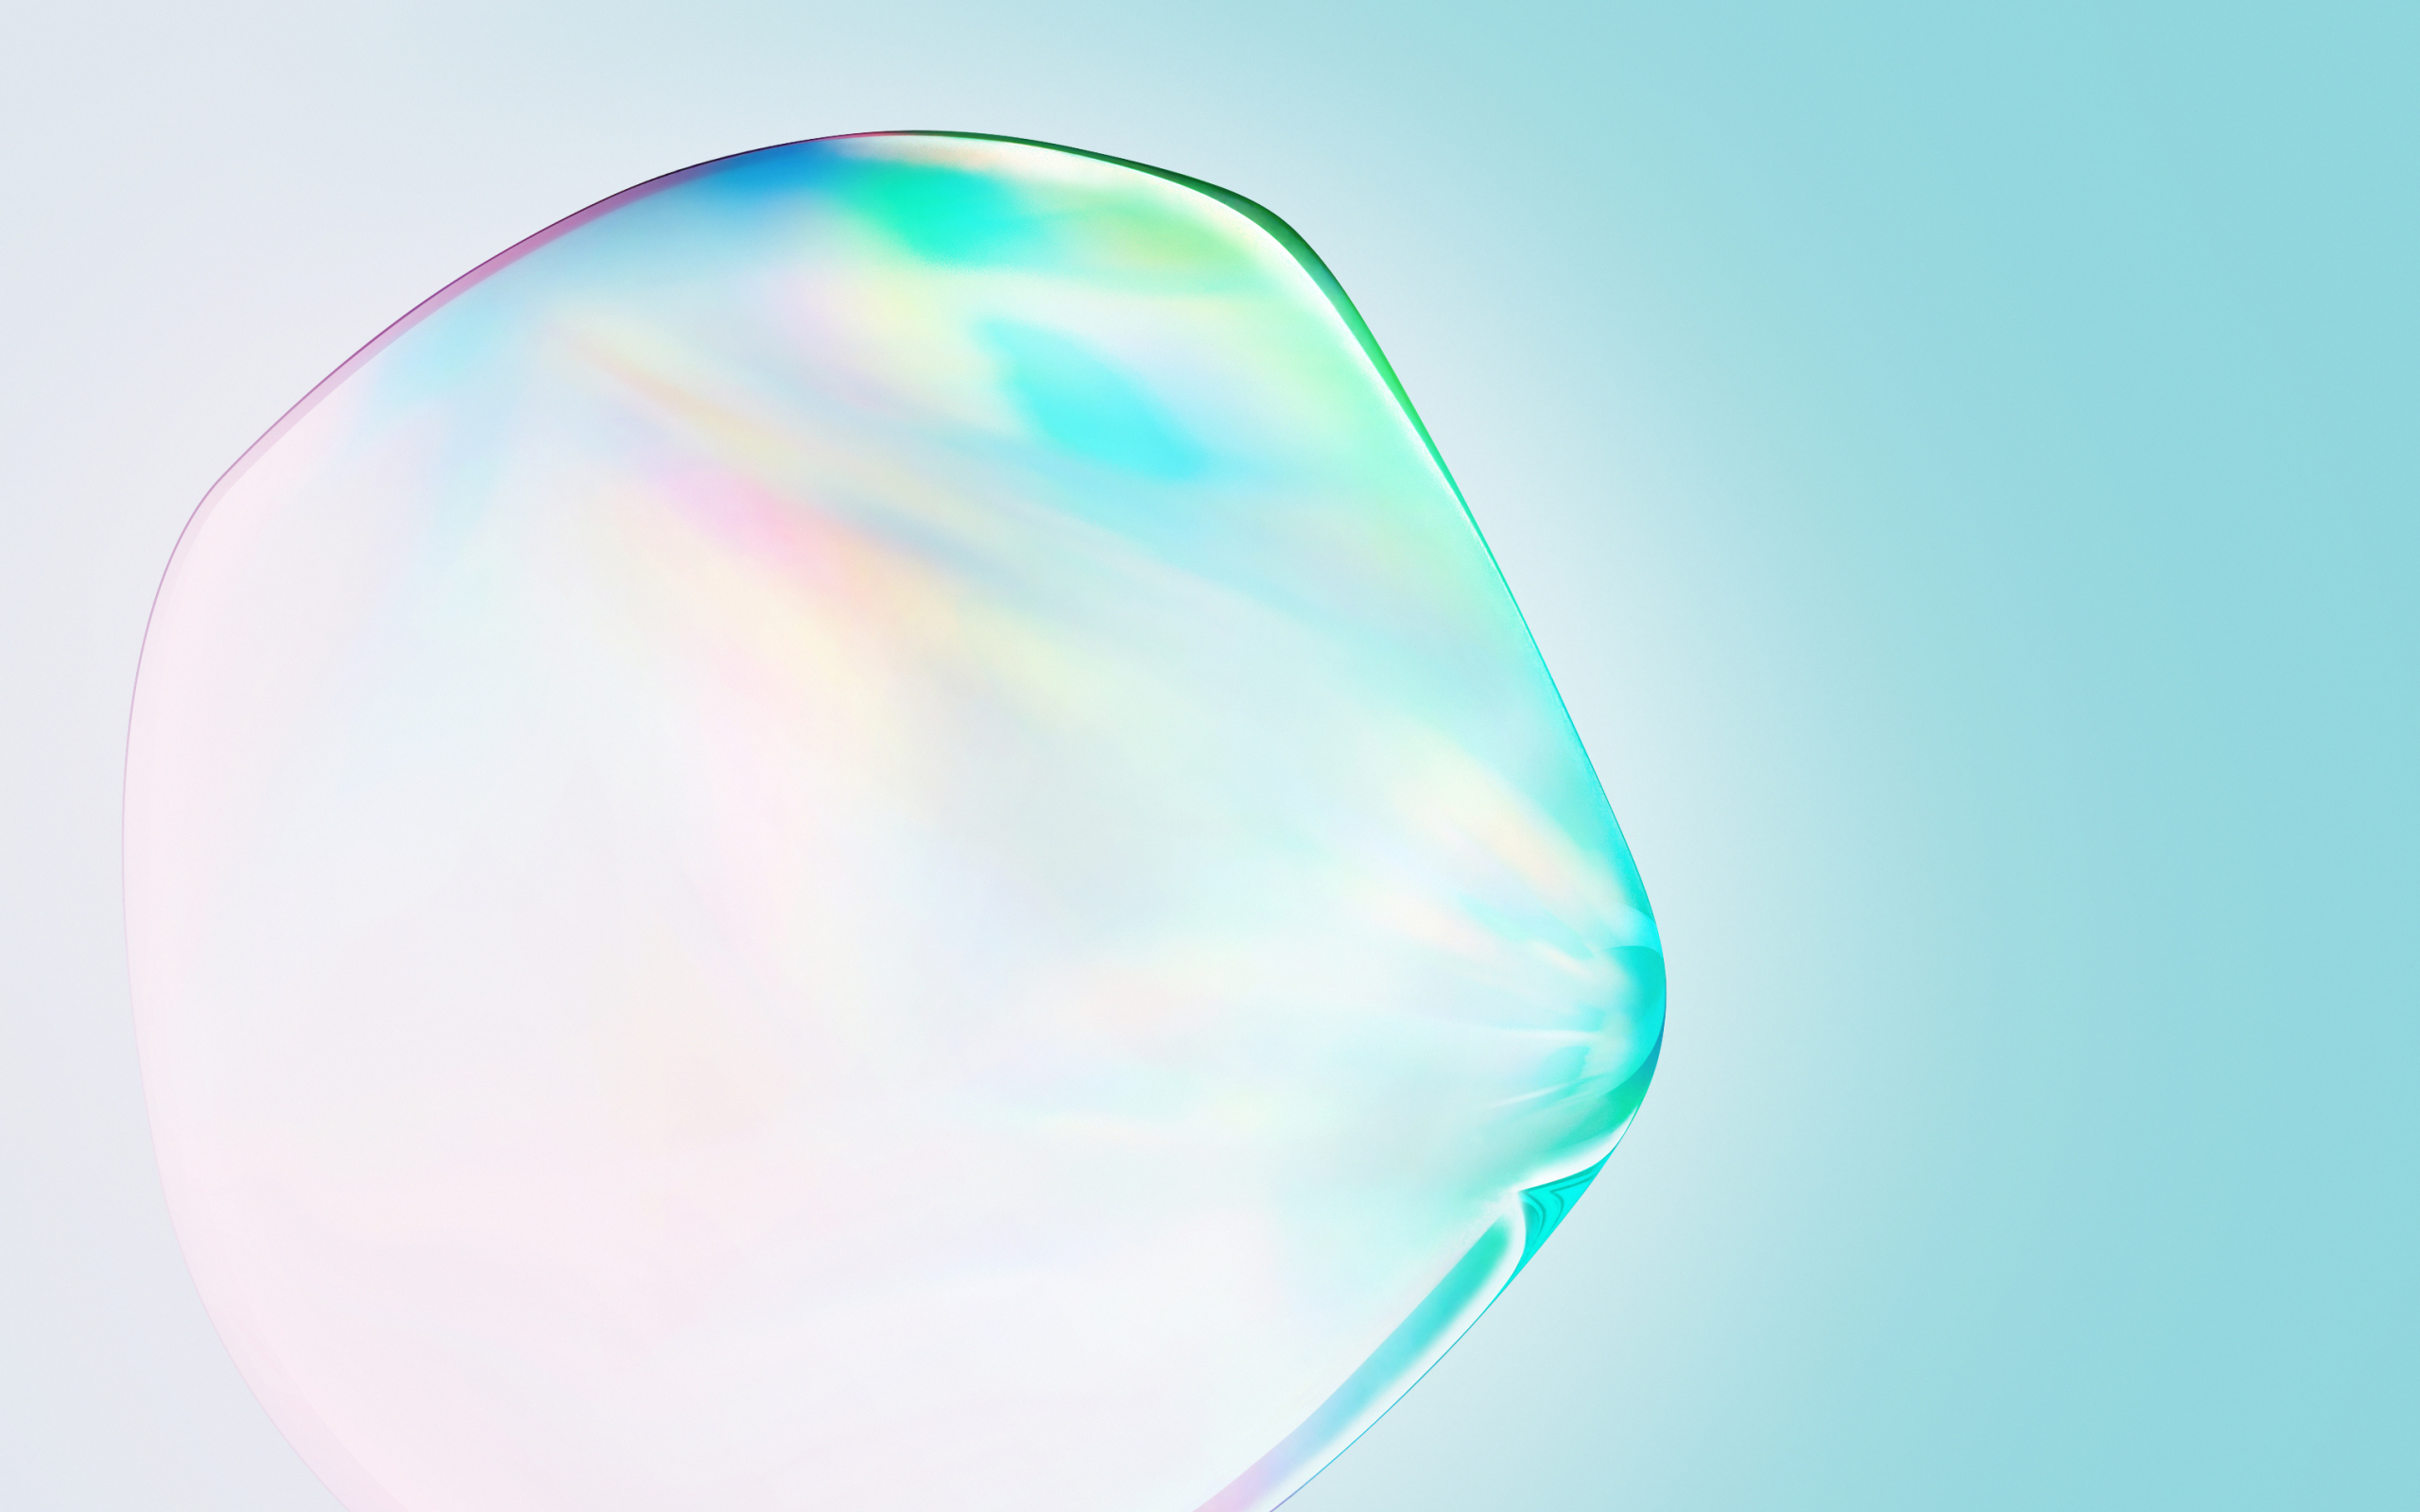 Transparent bubble on blue background